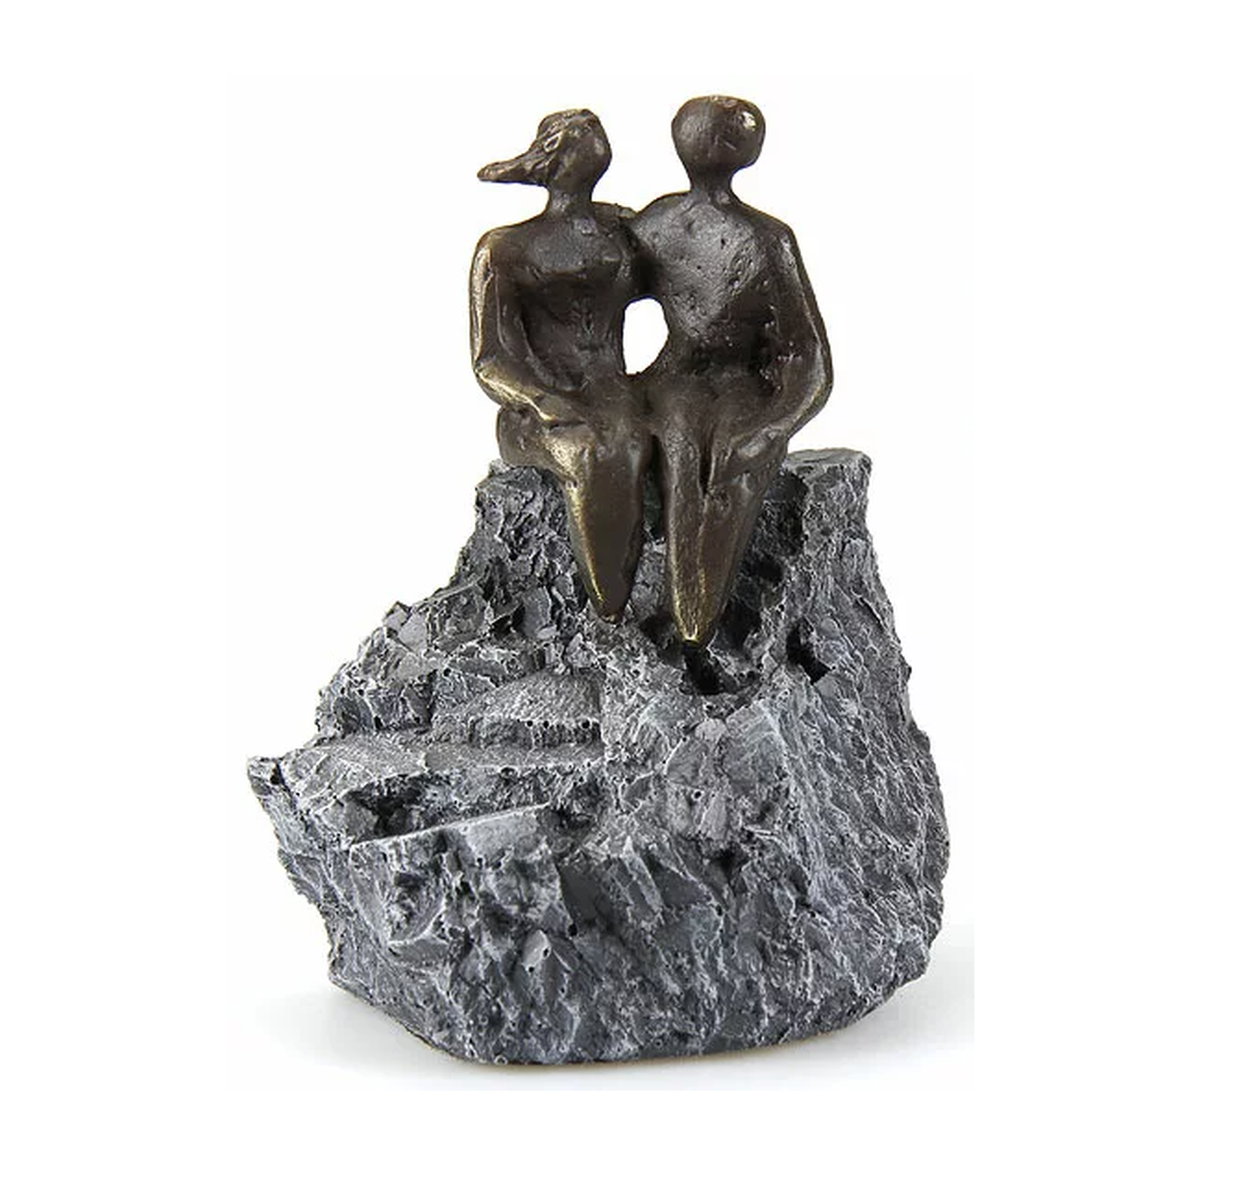 Liebesskulptur "Gemeinsamkeiten" von Gerard, bronzierter Metallguss